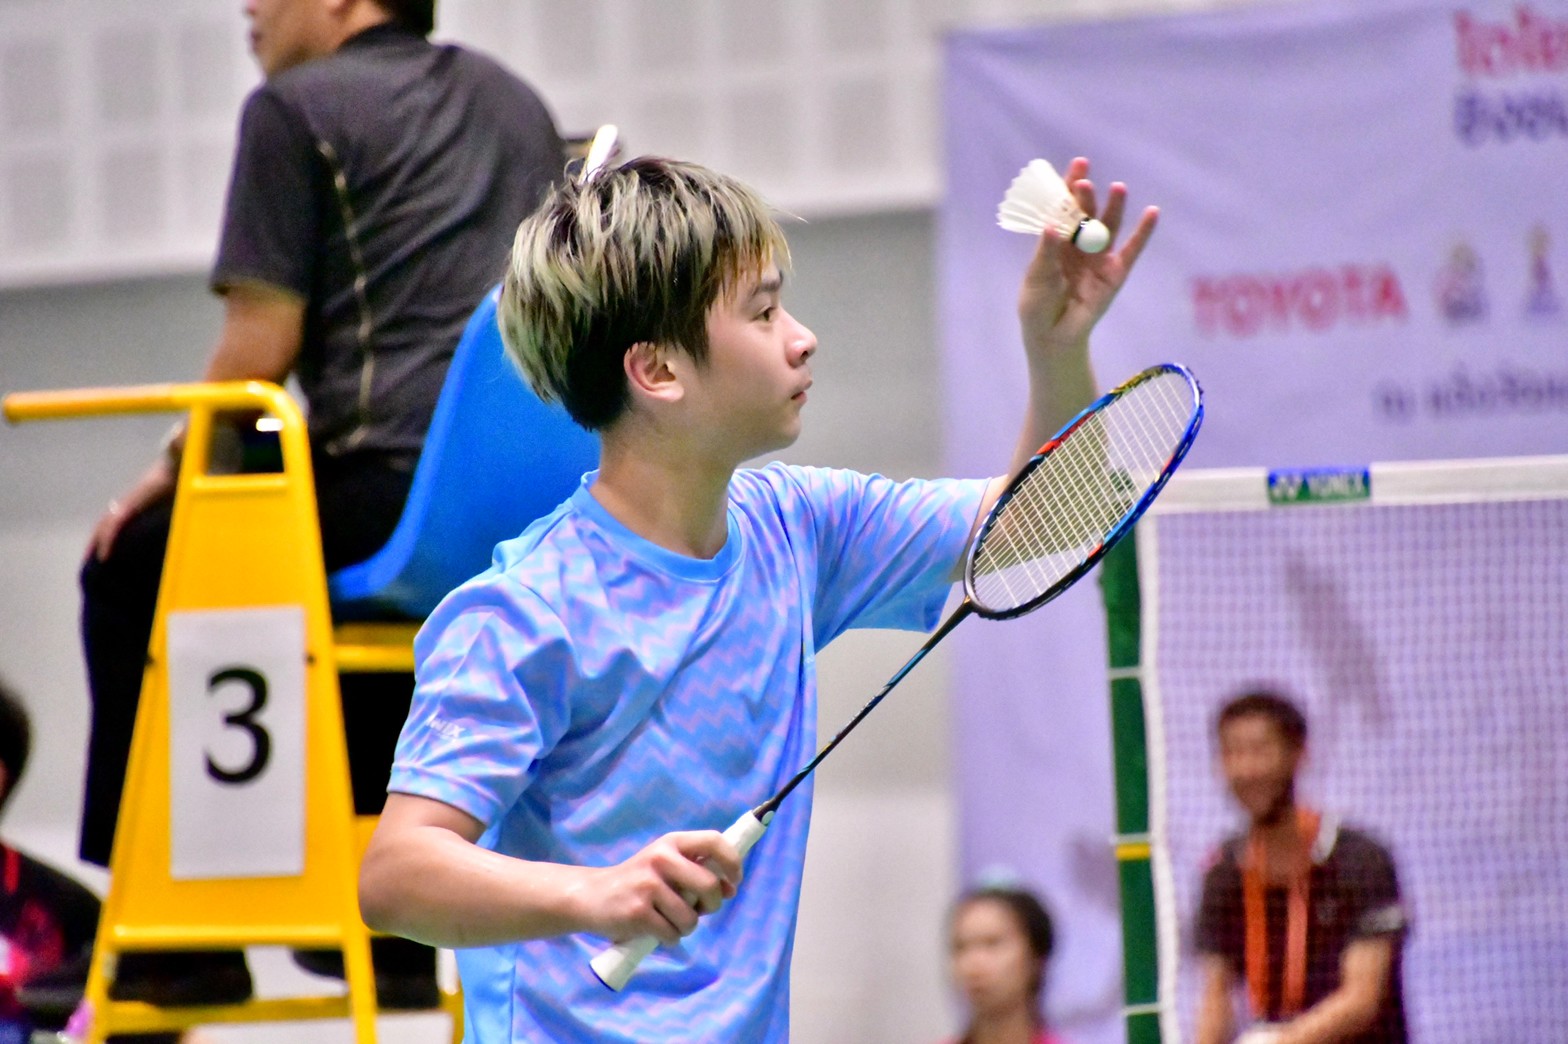 ผลการแข่งขัน โตโยต้า แบดมินตันเยาวชน รอบชิงชนะเลิศเยาวชนแห่งประเทศไทย ปี 2563 วันแรก